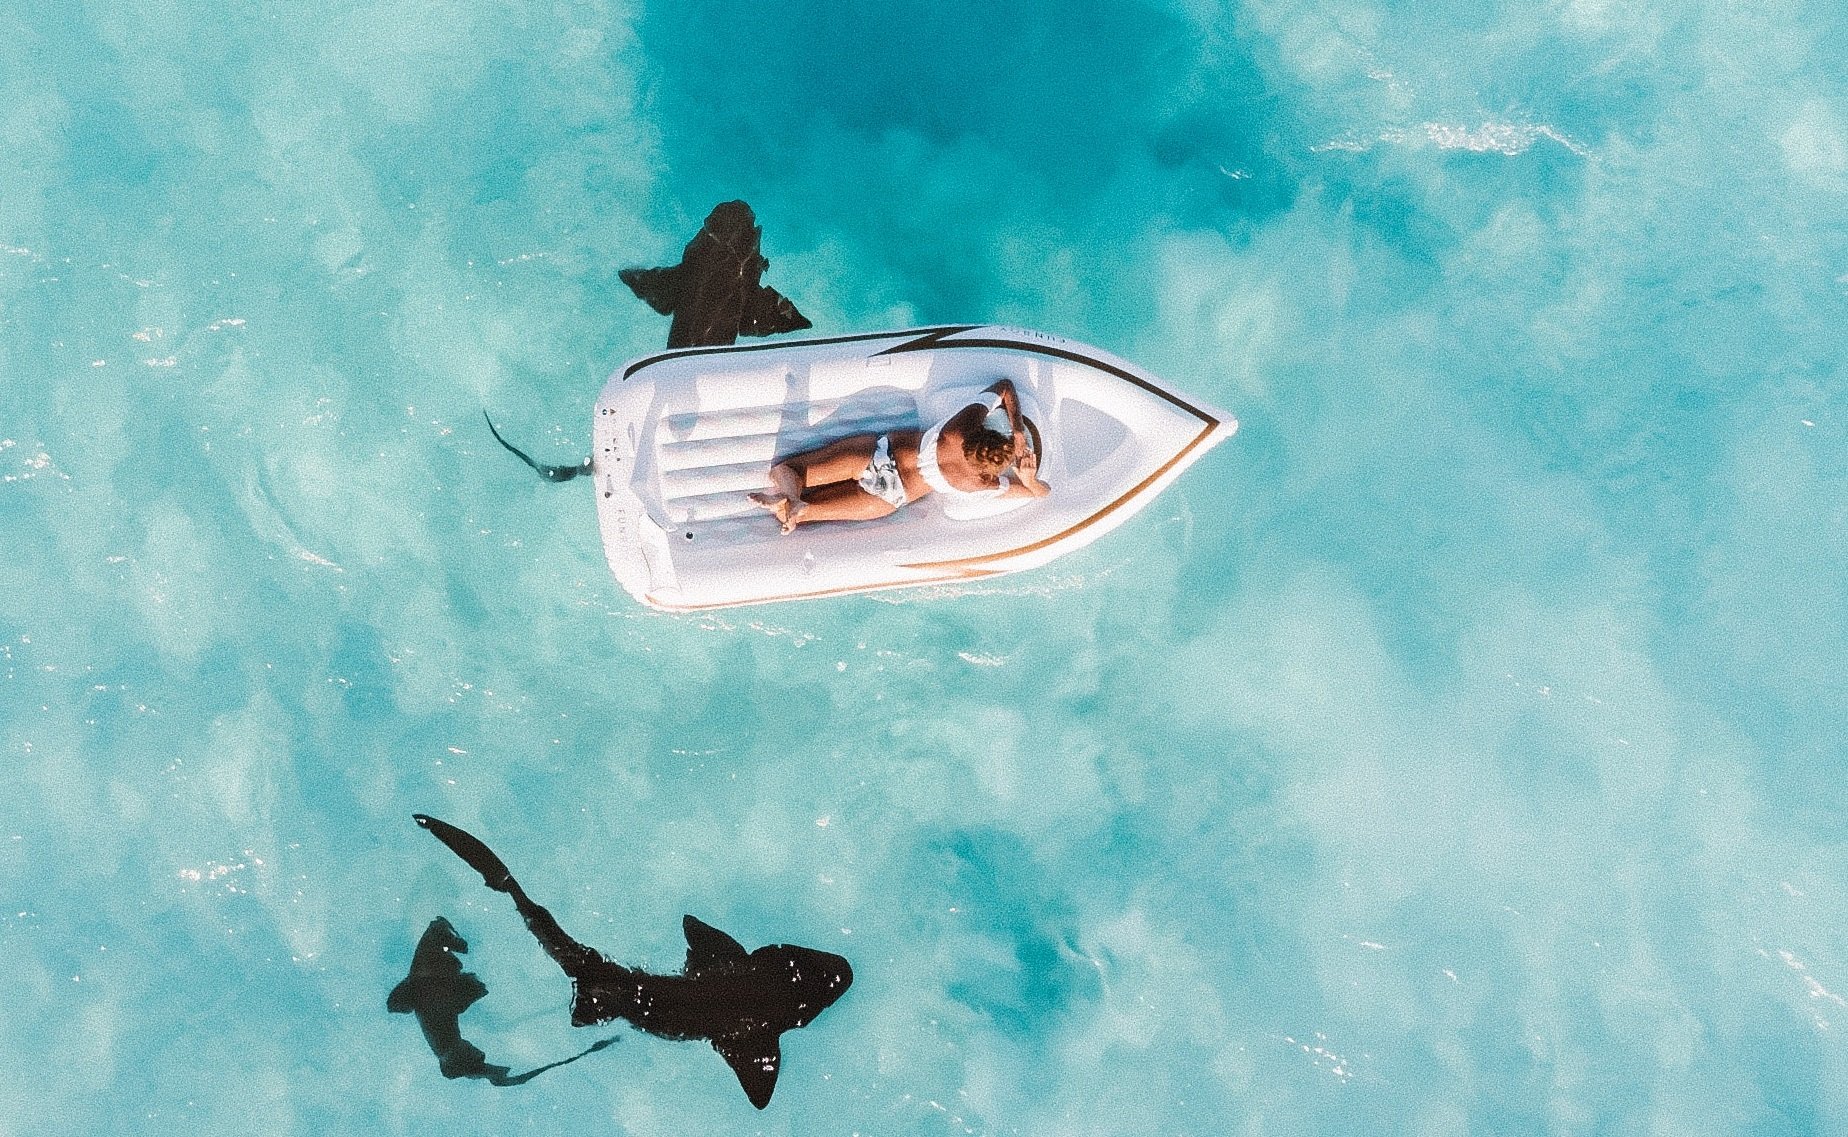 requins2.jpg?resize=412,275 - Un père de famille filmait ses enfants avec son drone et repère un requin en train de s'approcher..